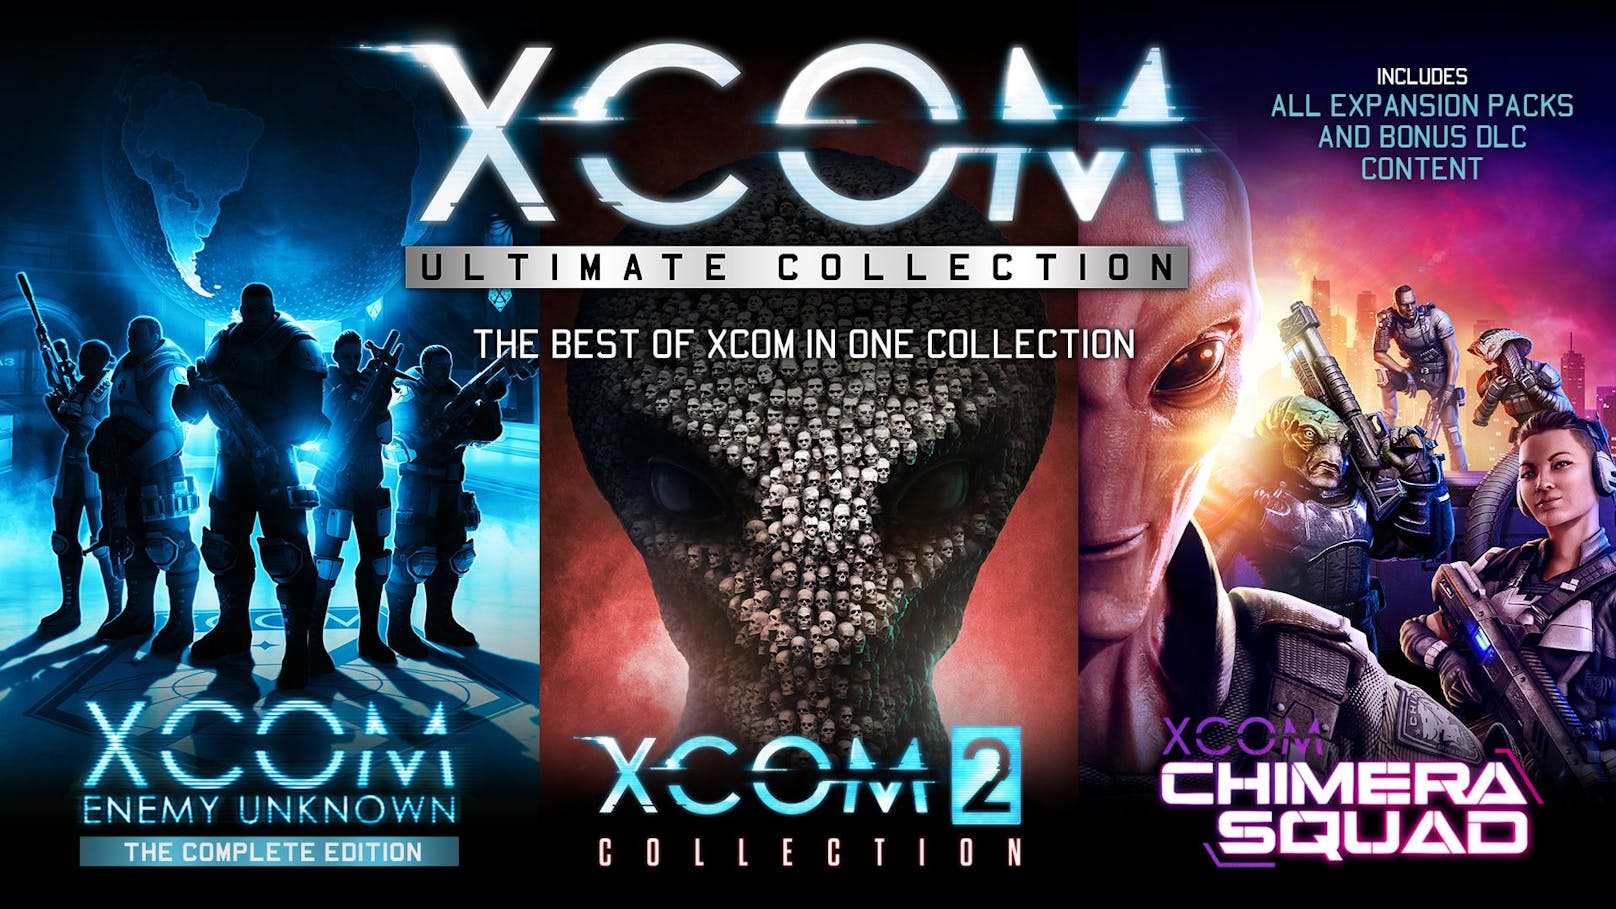 Das Beste von "XCOM" in einer Sammlung – vom 4. bis 18. März zum Sonderpreis!